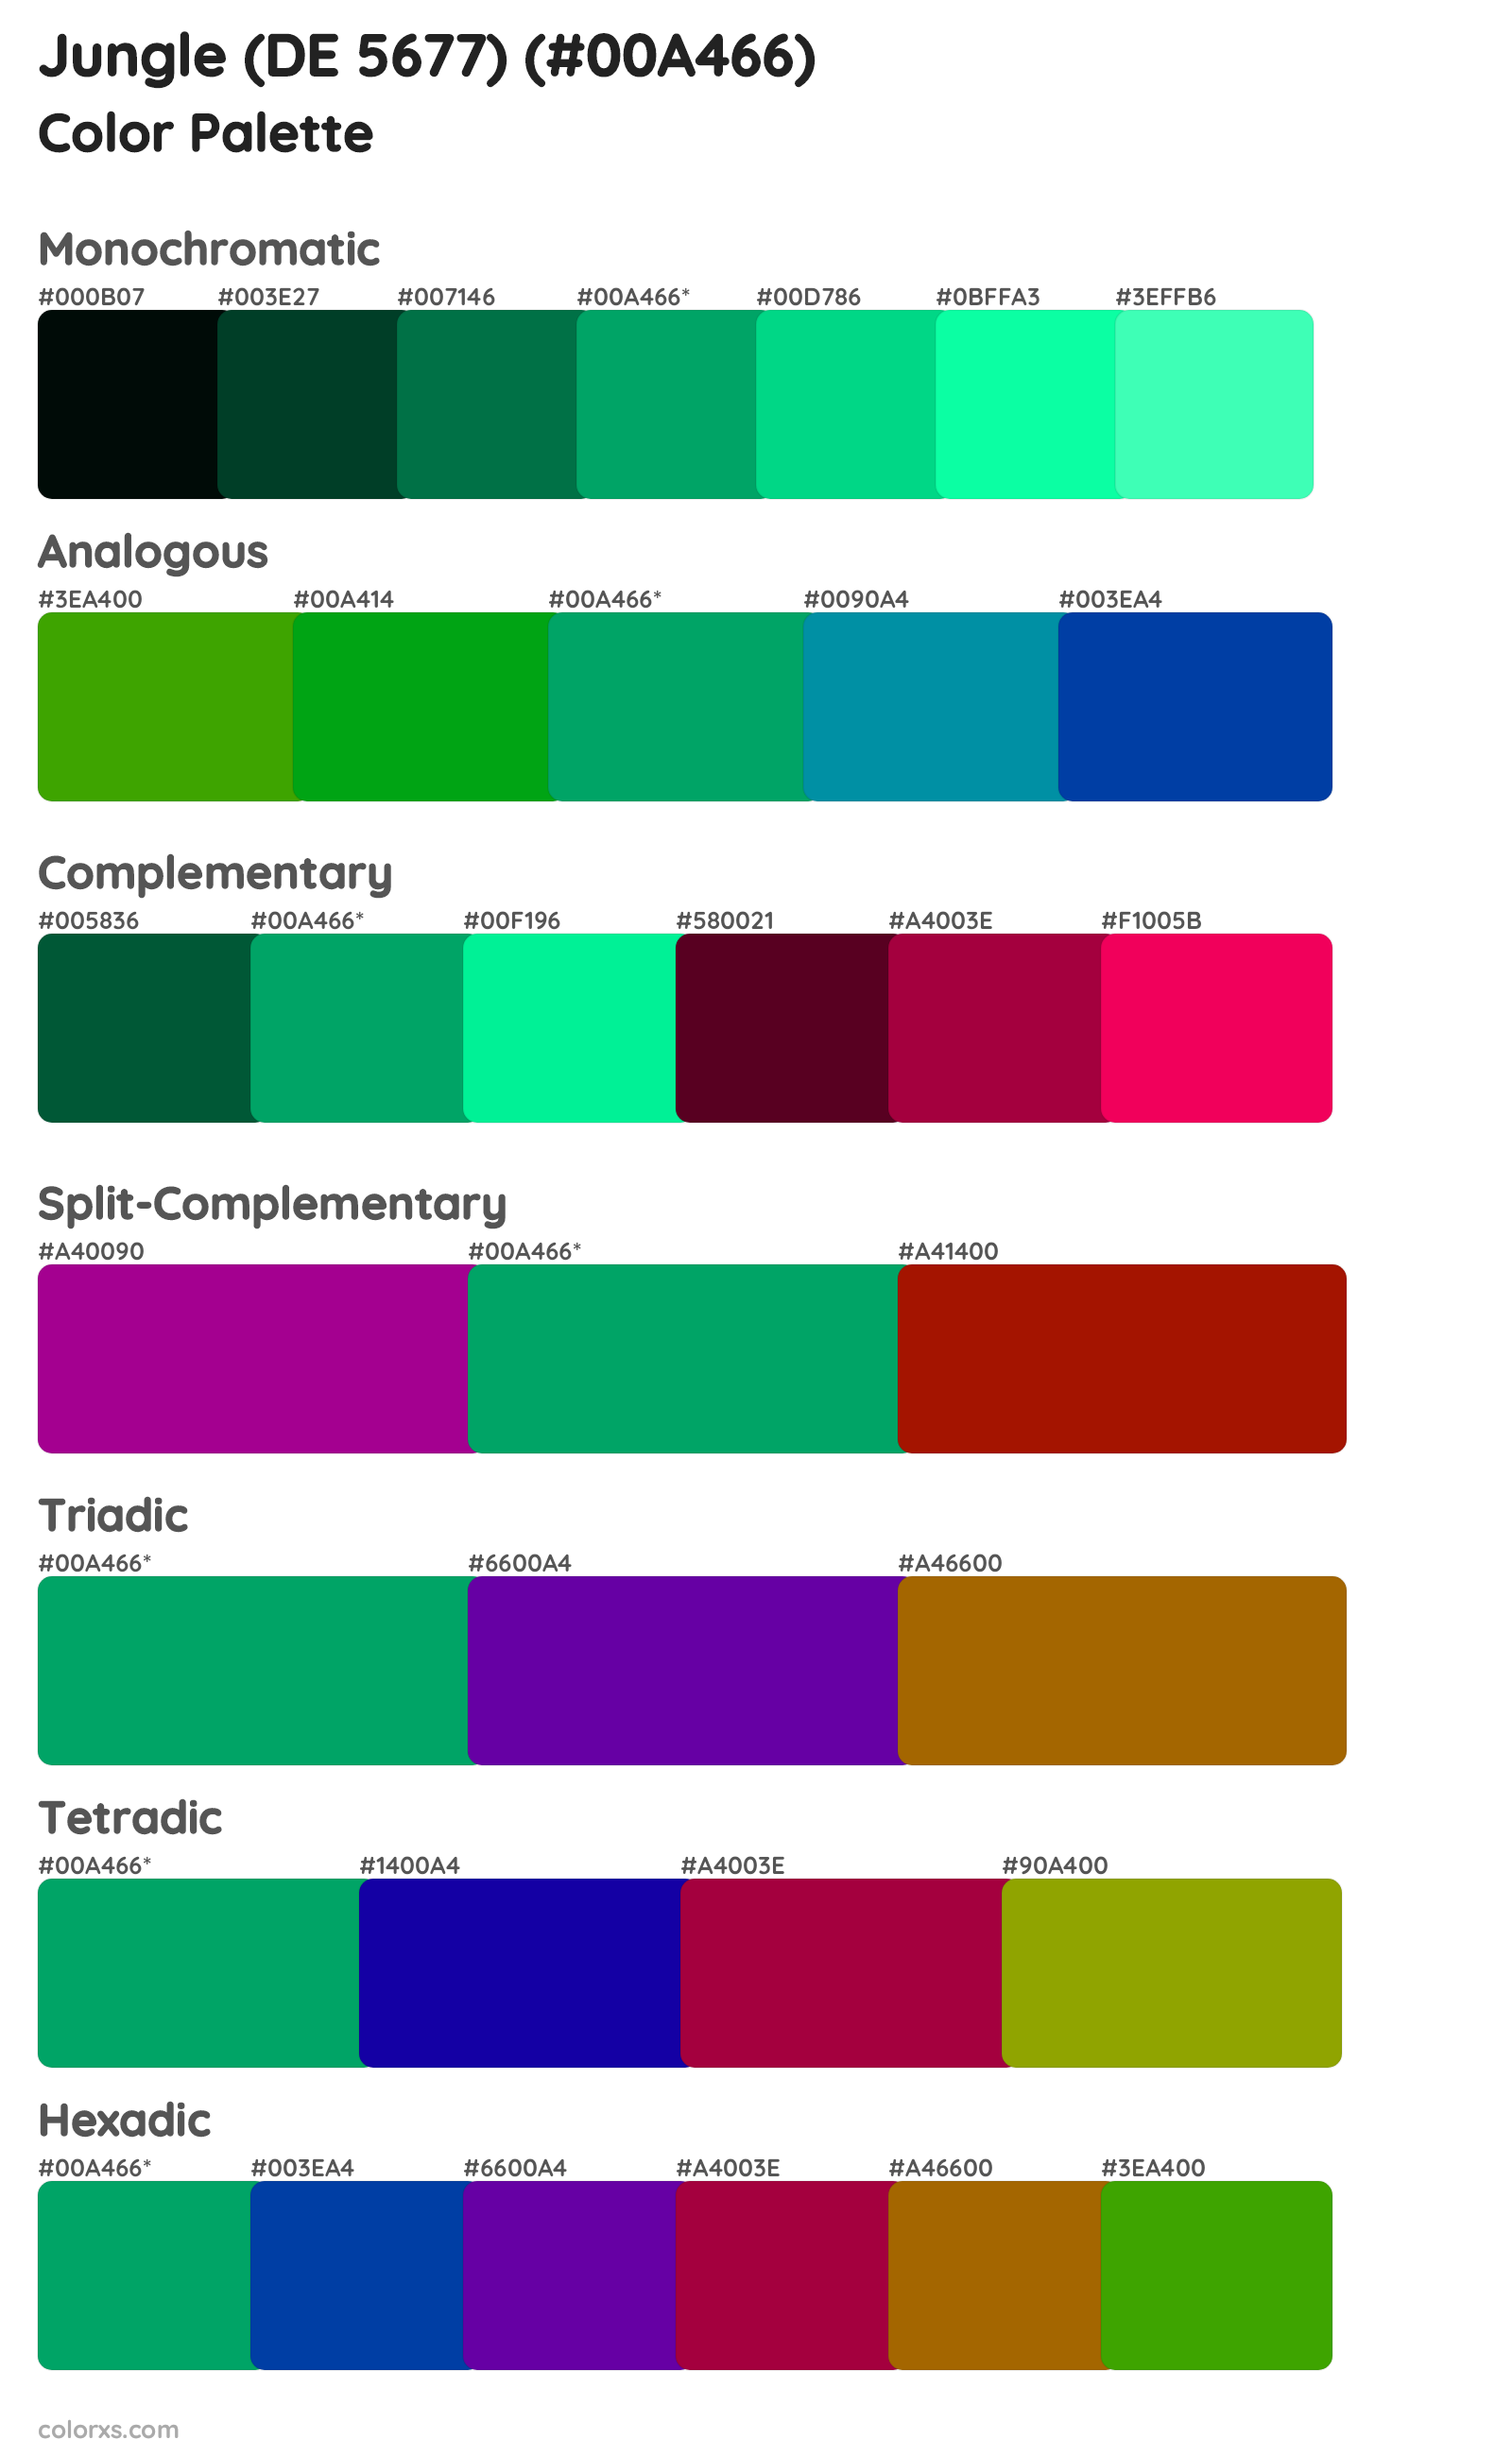 Jungle (DE 5677) Color Scheme Palettes